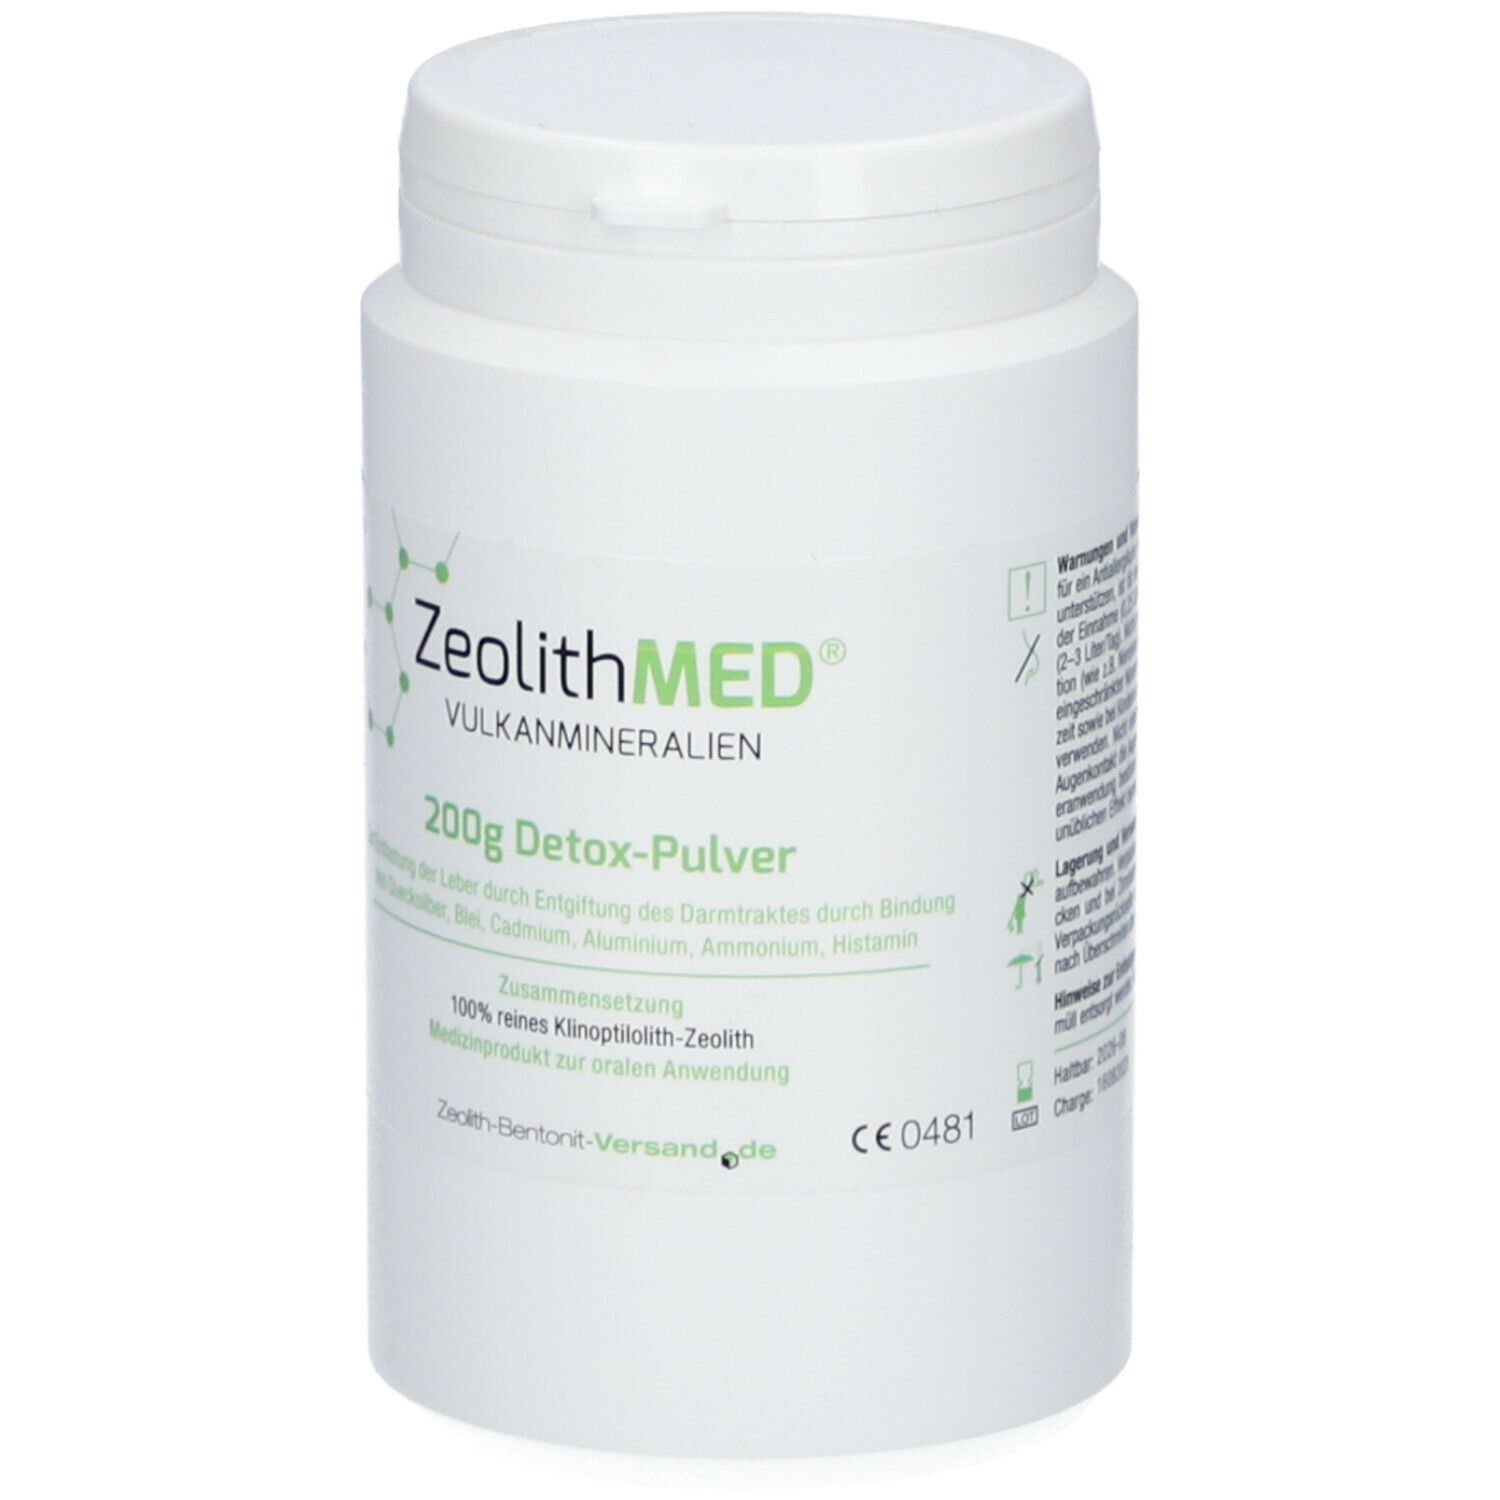 ZeolithMED® Detox-Pulver